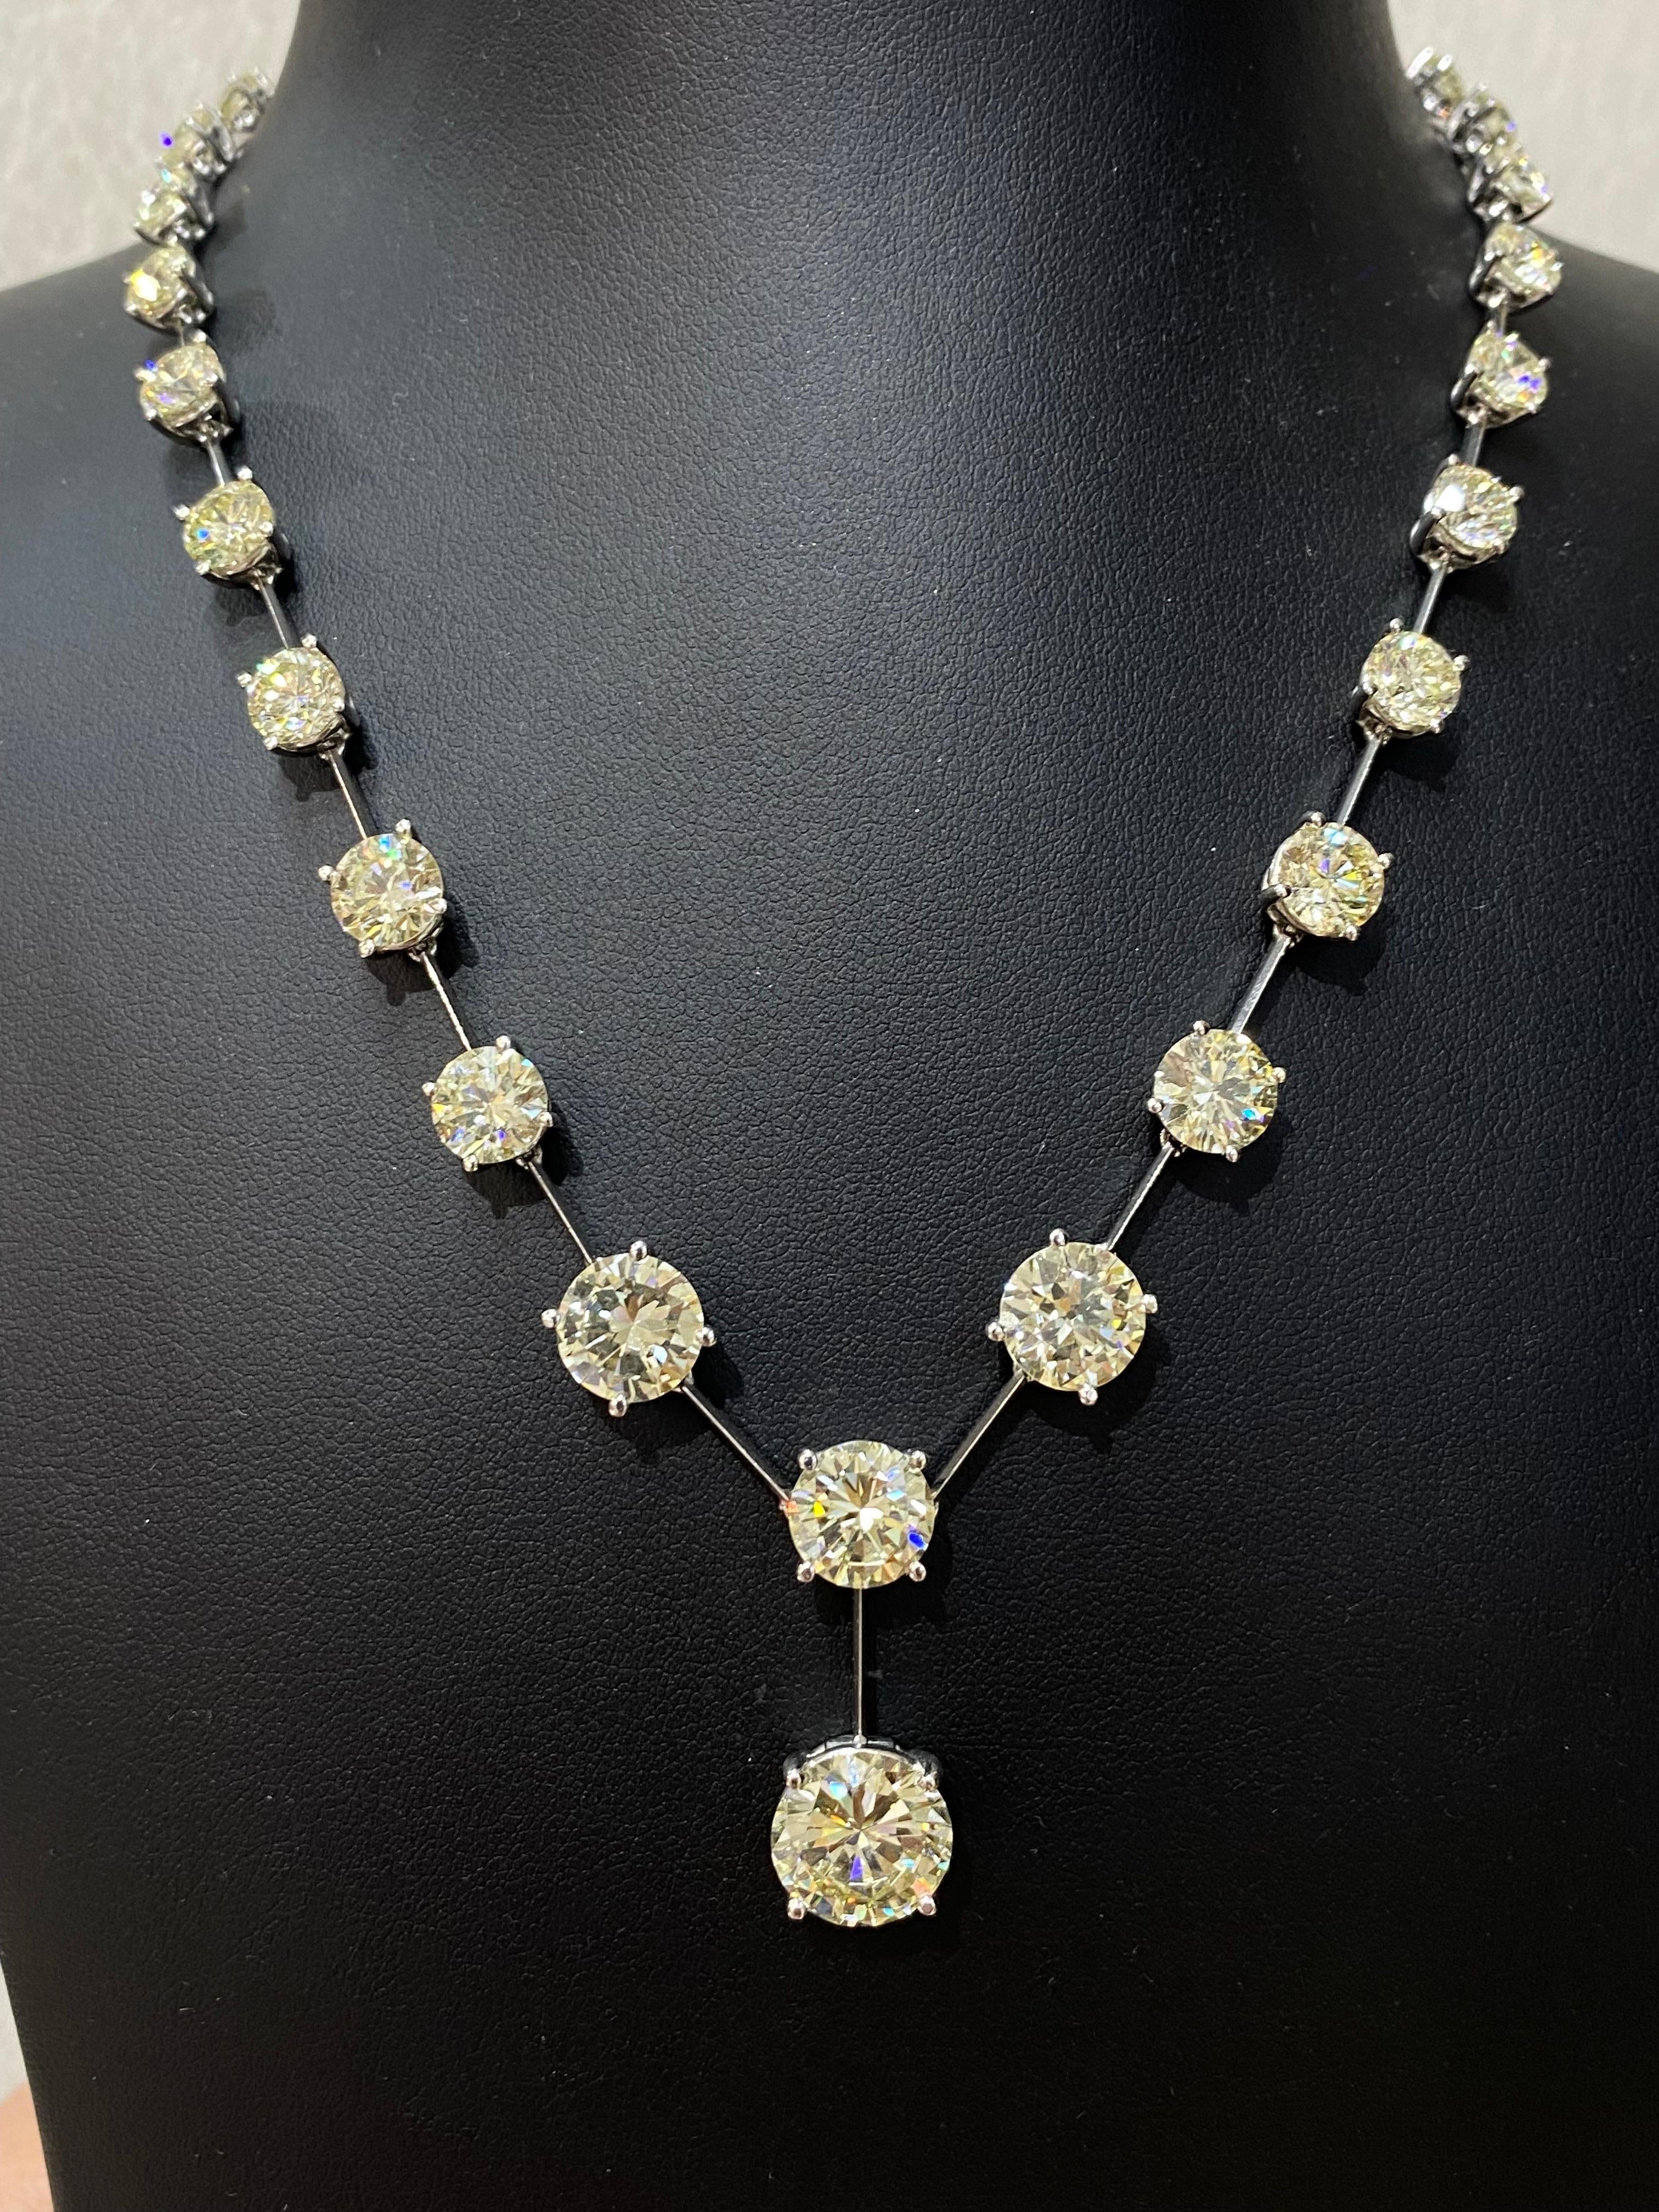 Brilliant Cut 30.72 Carat Solitaire Diamond Necklace For Sale